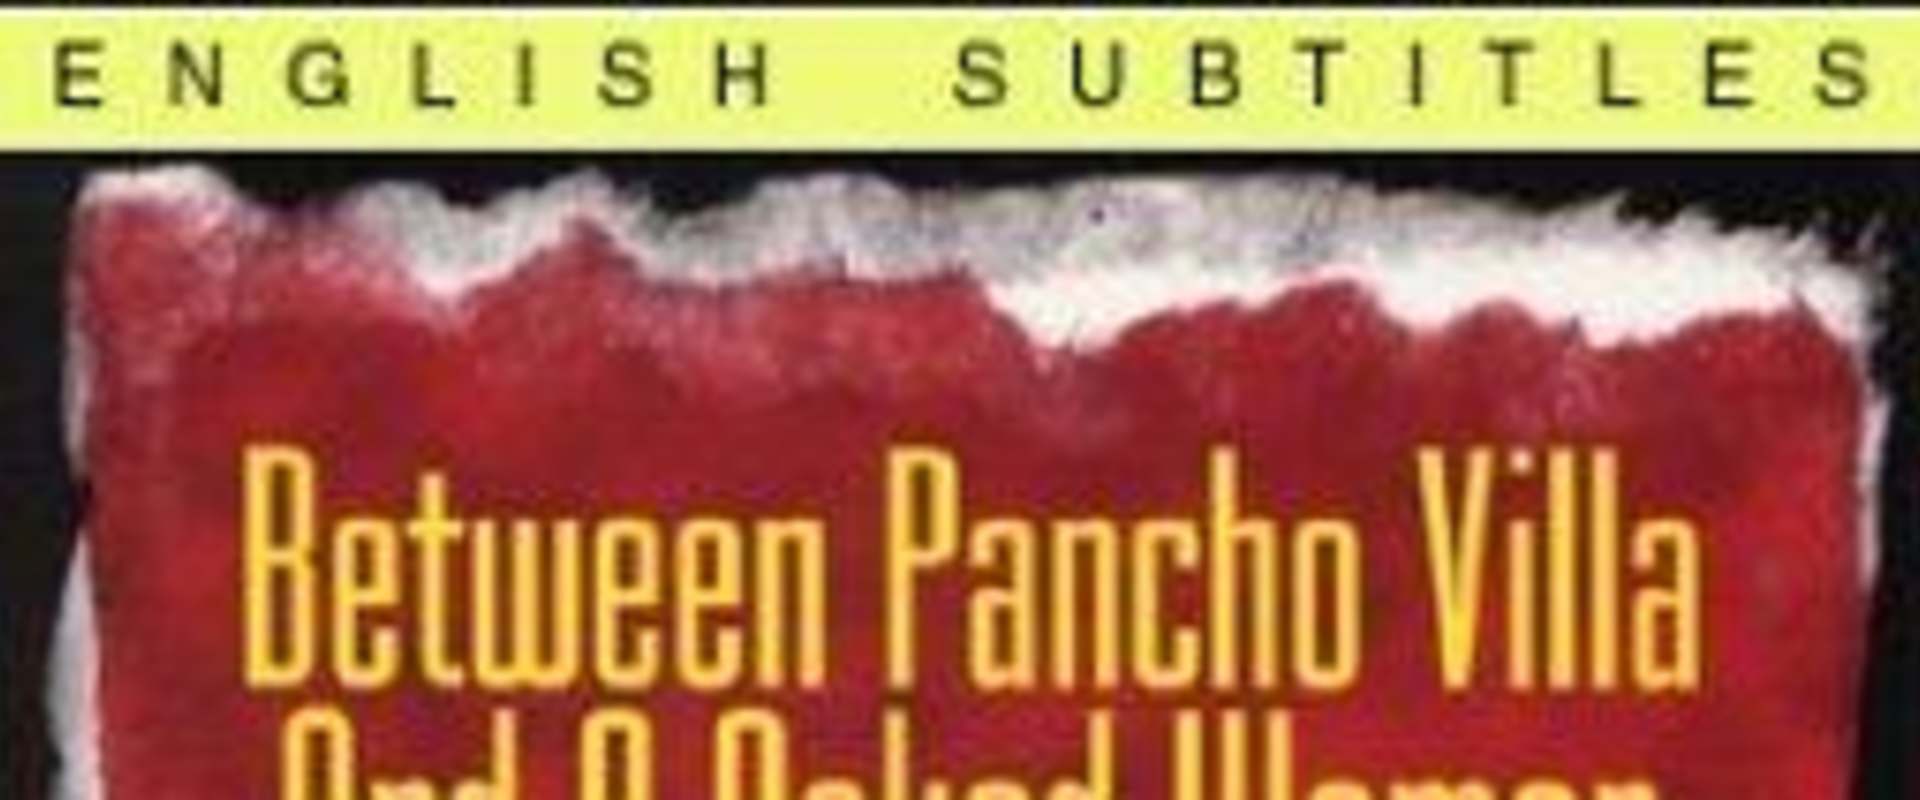 Entre Pancho Villa y una mujer desnuda background 1